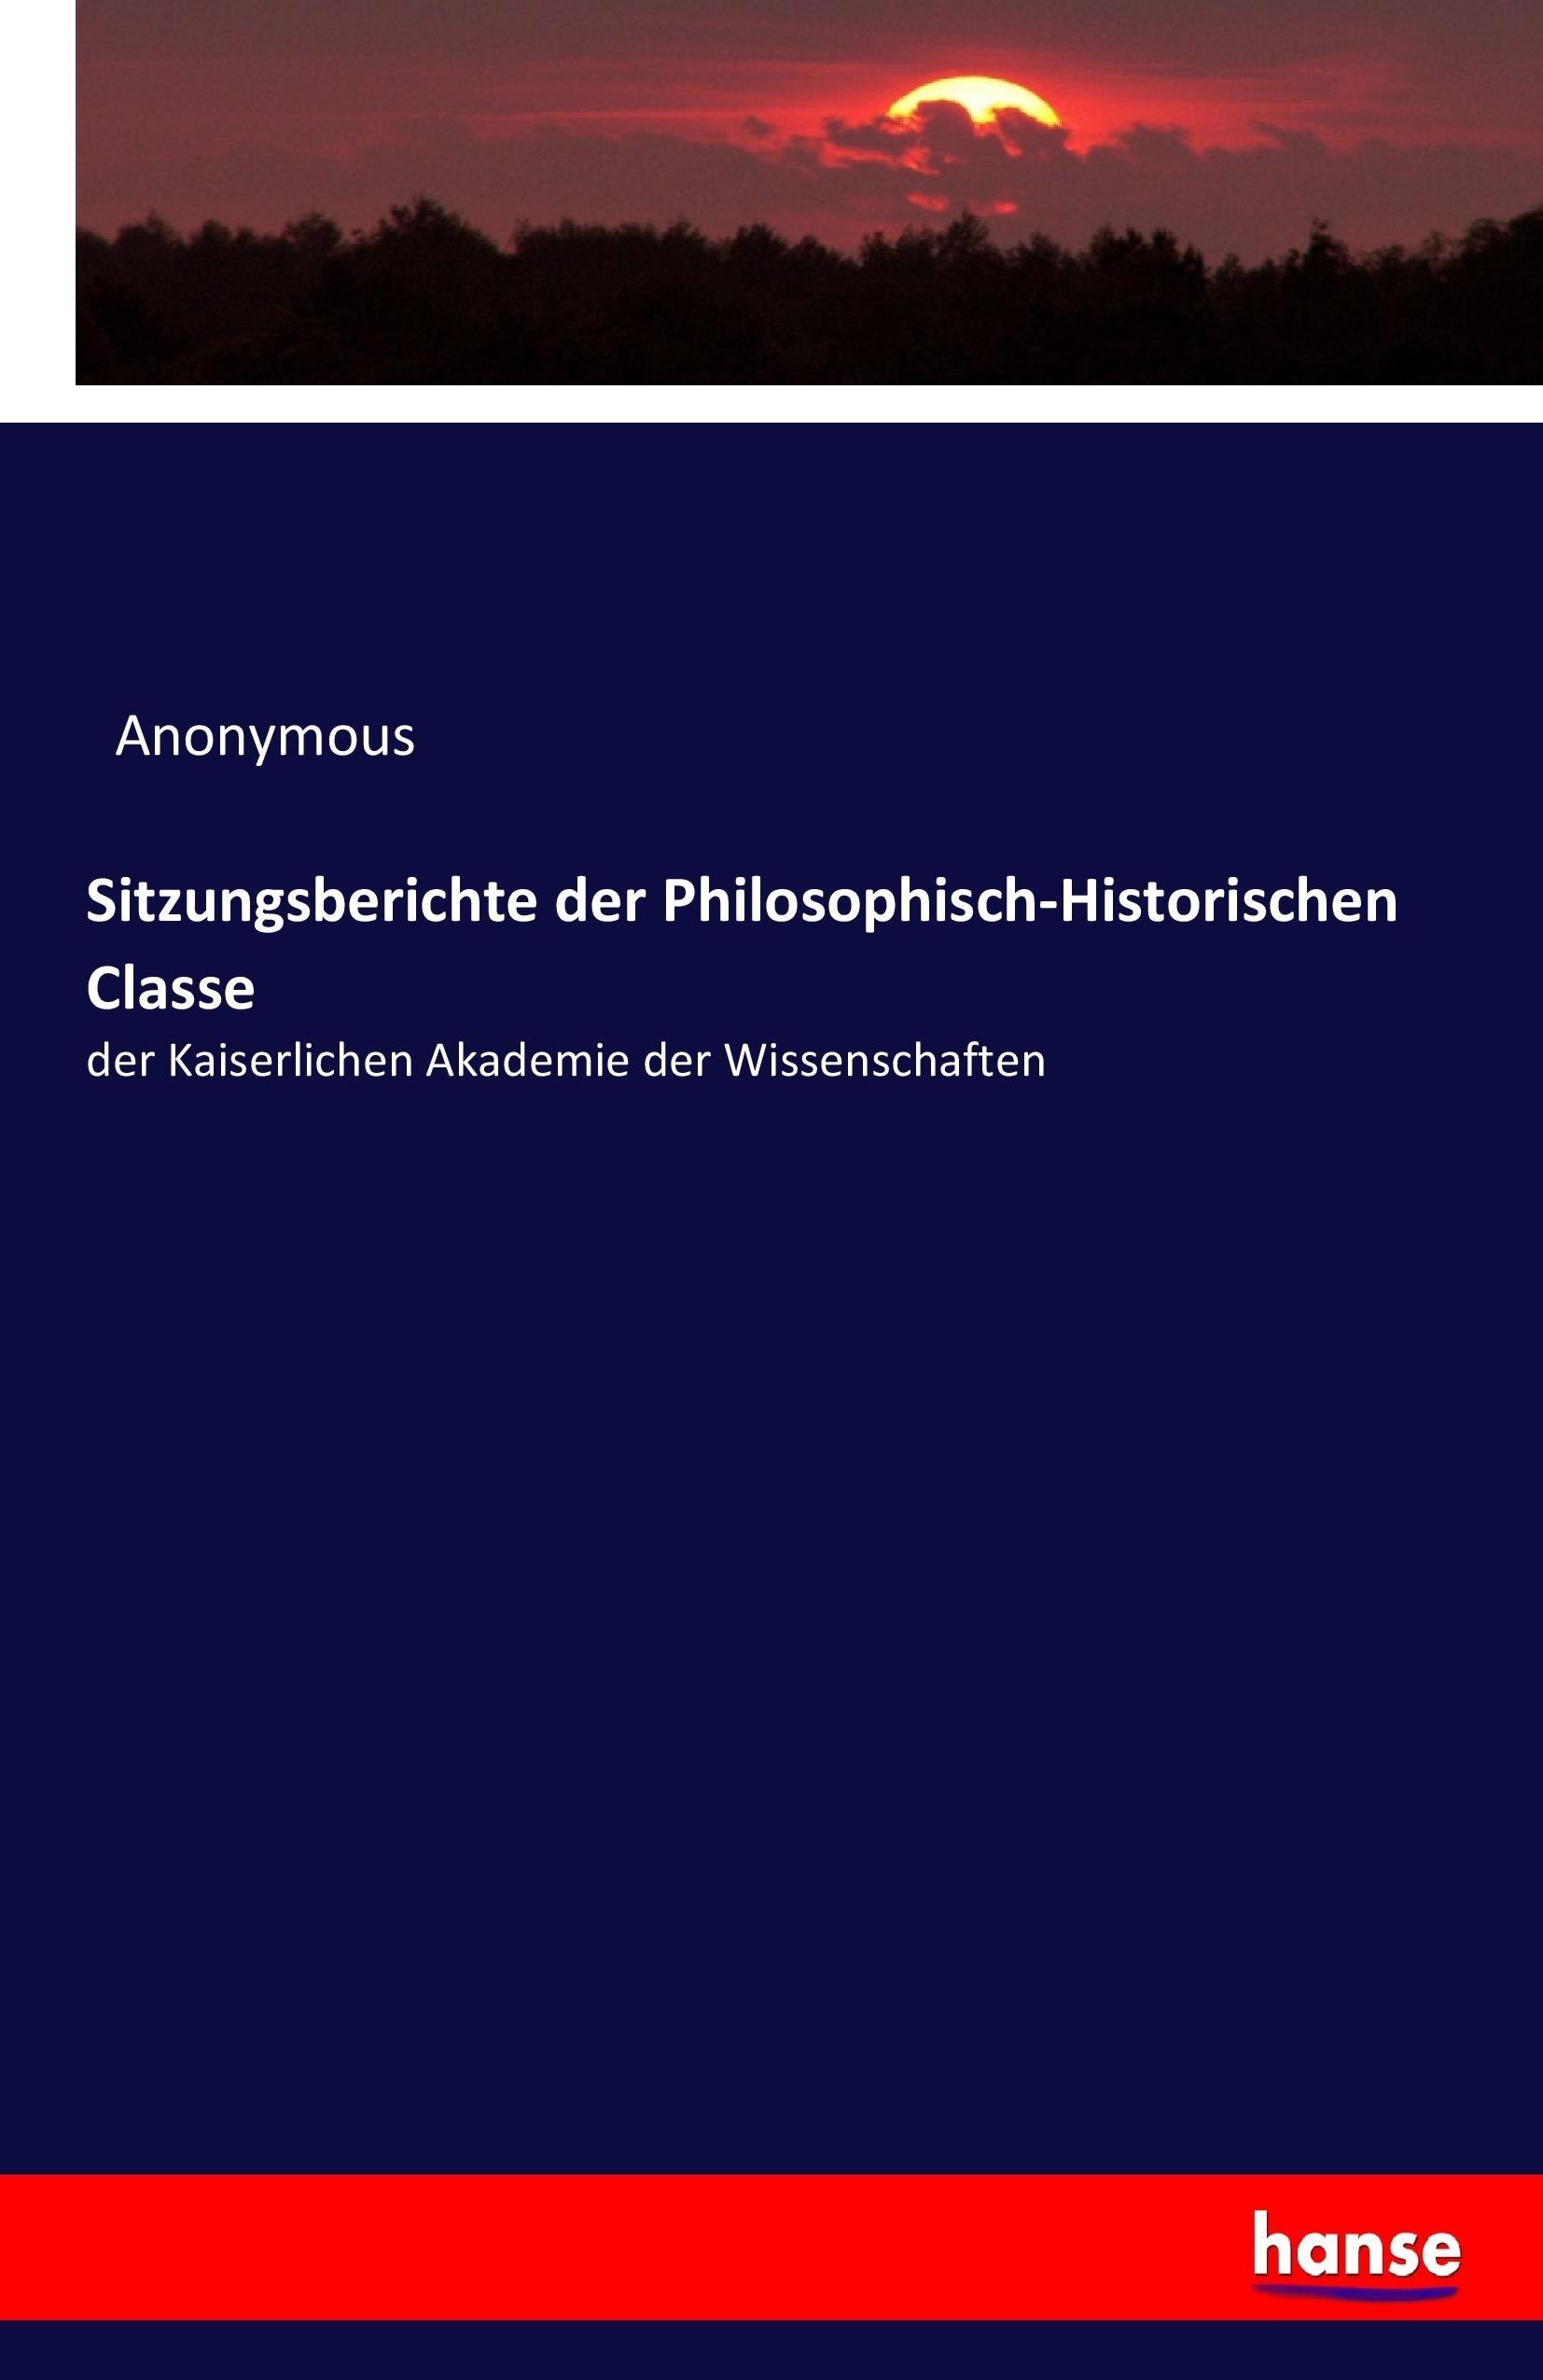 Sitzungsberichte der Philosophisch-Historischen Classe | der Kaiserlichen Akademie der Wissenschaften | Anonymous | Taschenbuch | Paperback | 76 S. | Deutsch | 2017 | hansebooks | EAN 9783743670907 - Anonymous